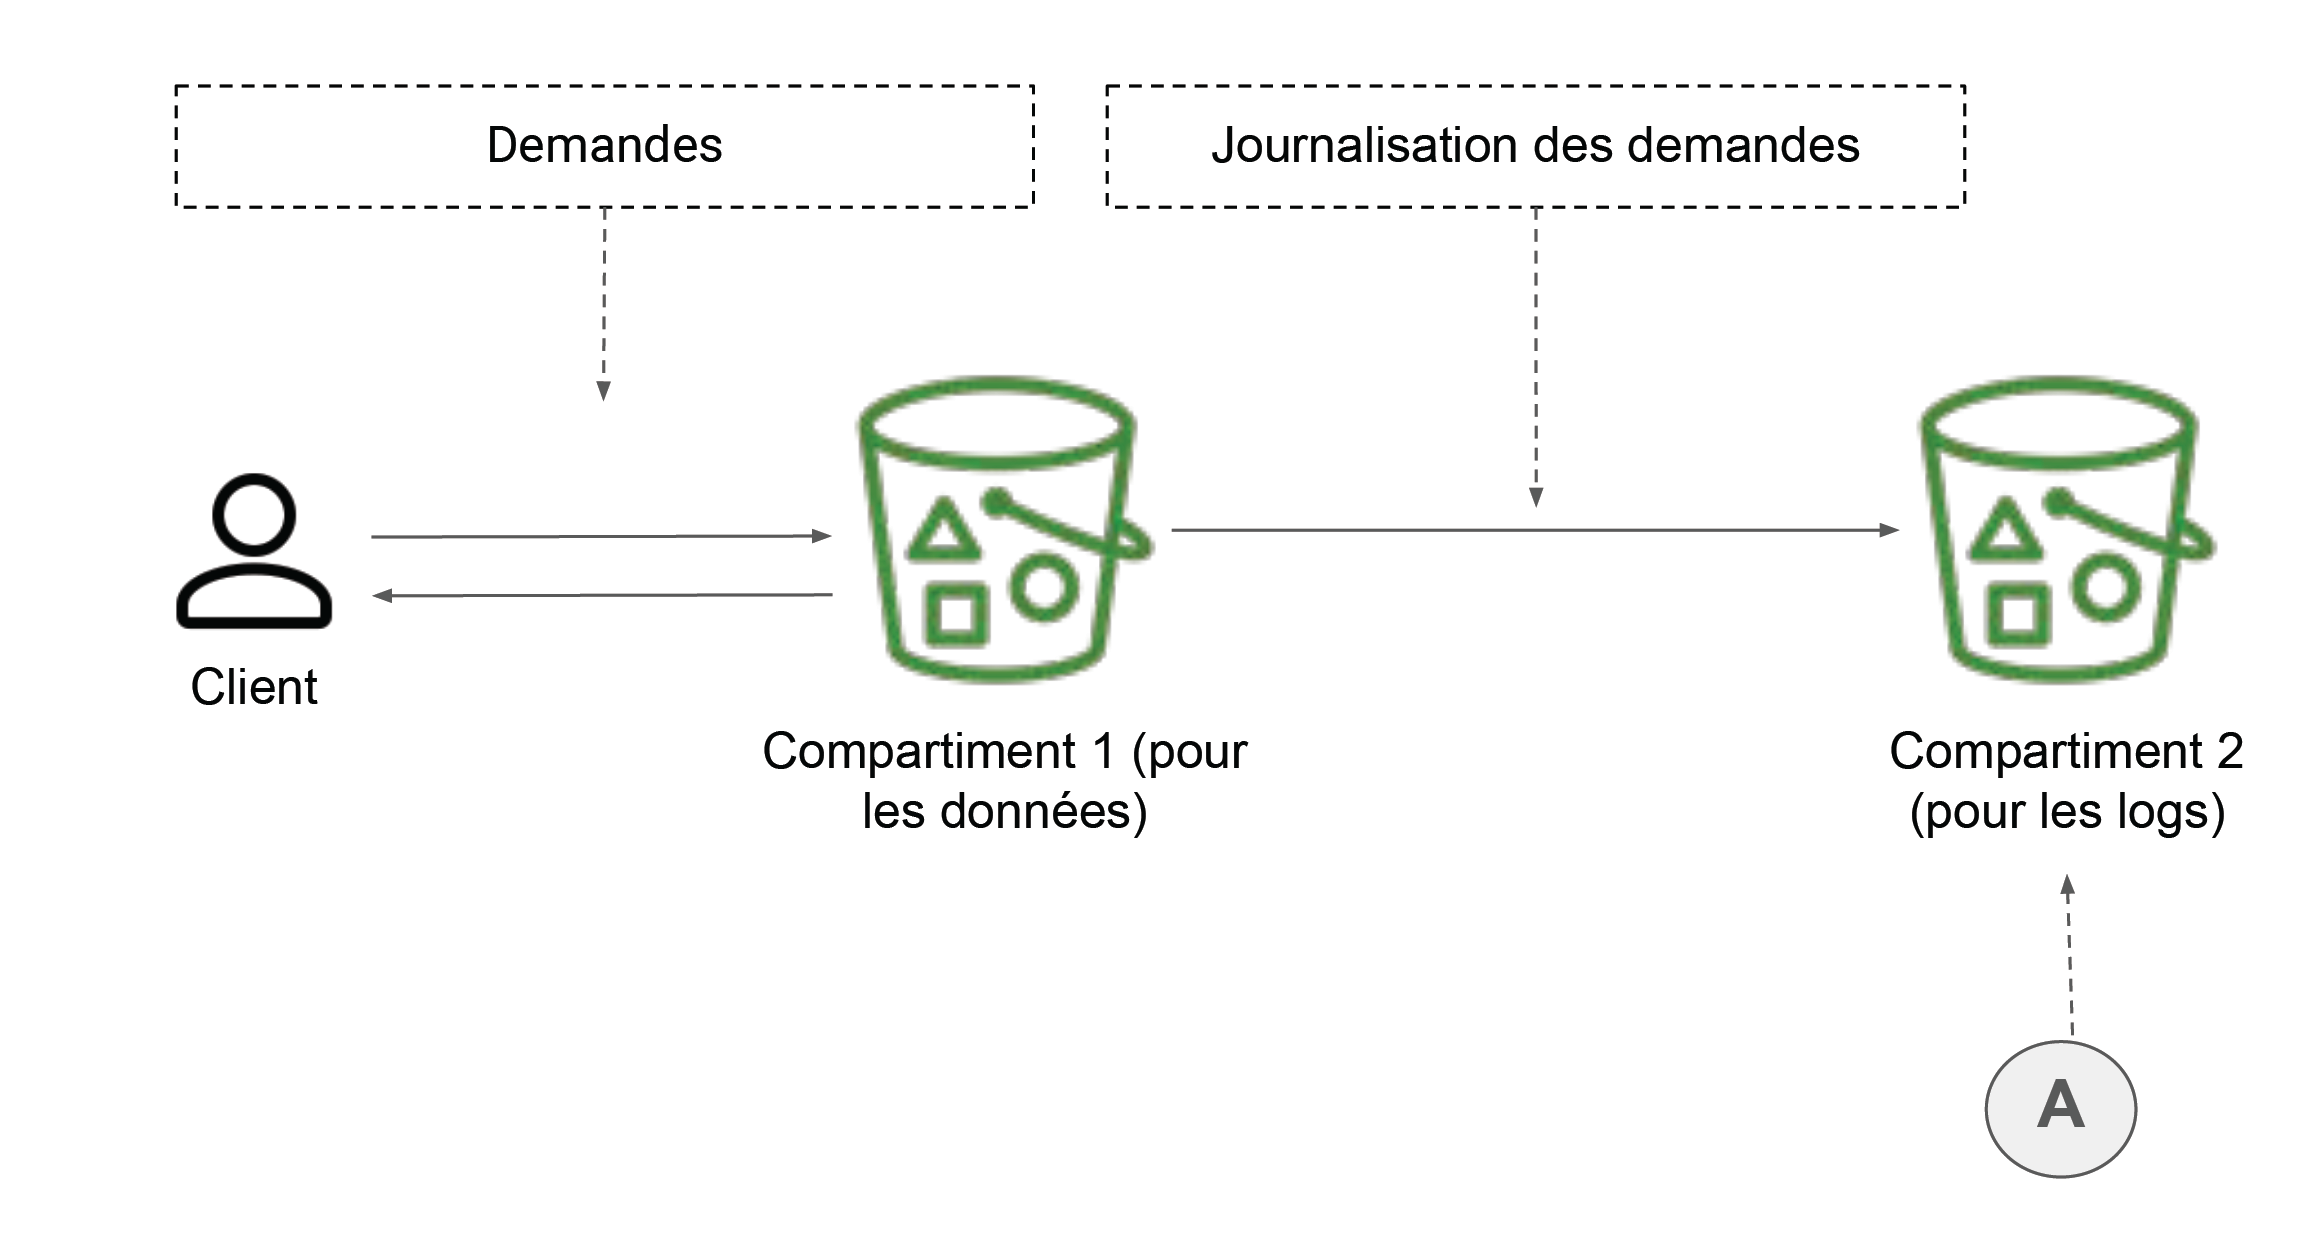 Un chemin mène du client vers compartiment 1 et en arrière (demandes), puis de compartiment 1 vers compartiment 2 (Journalisation des demandes).